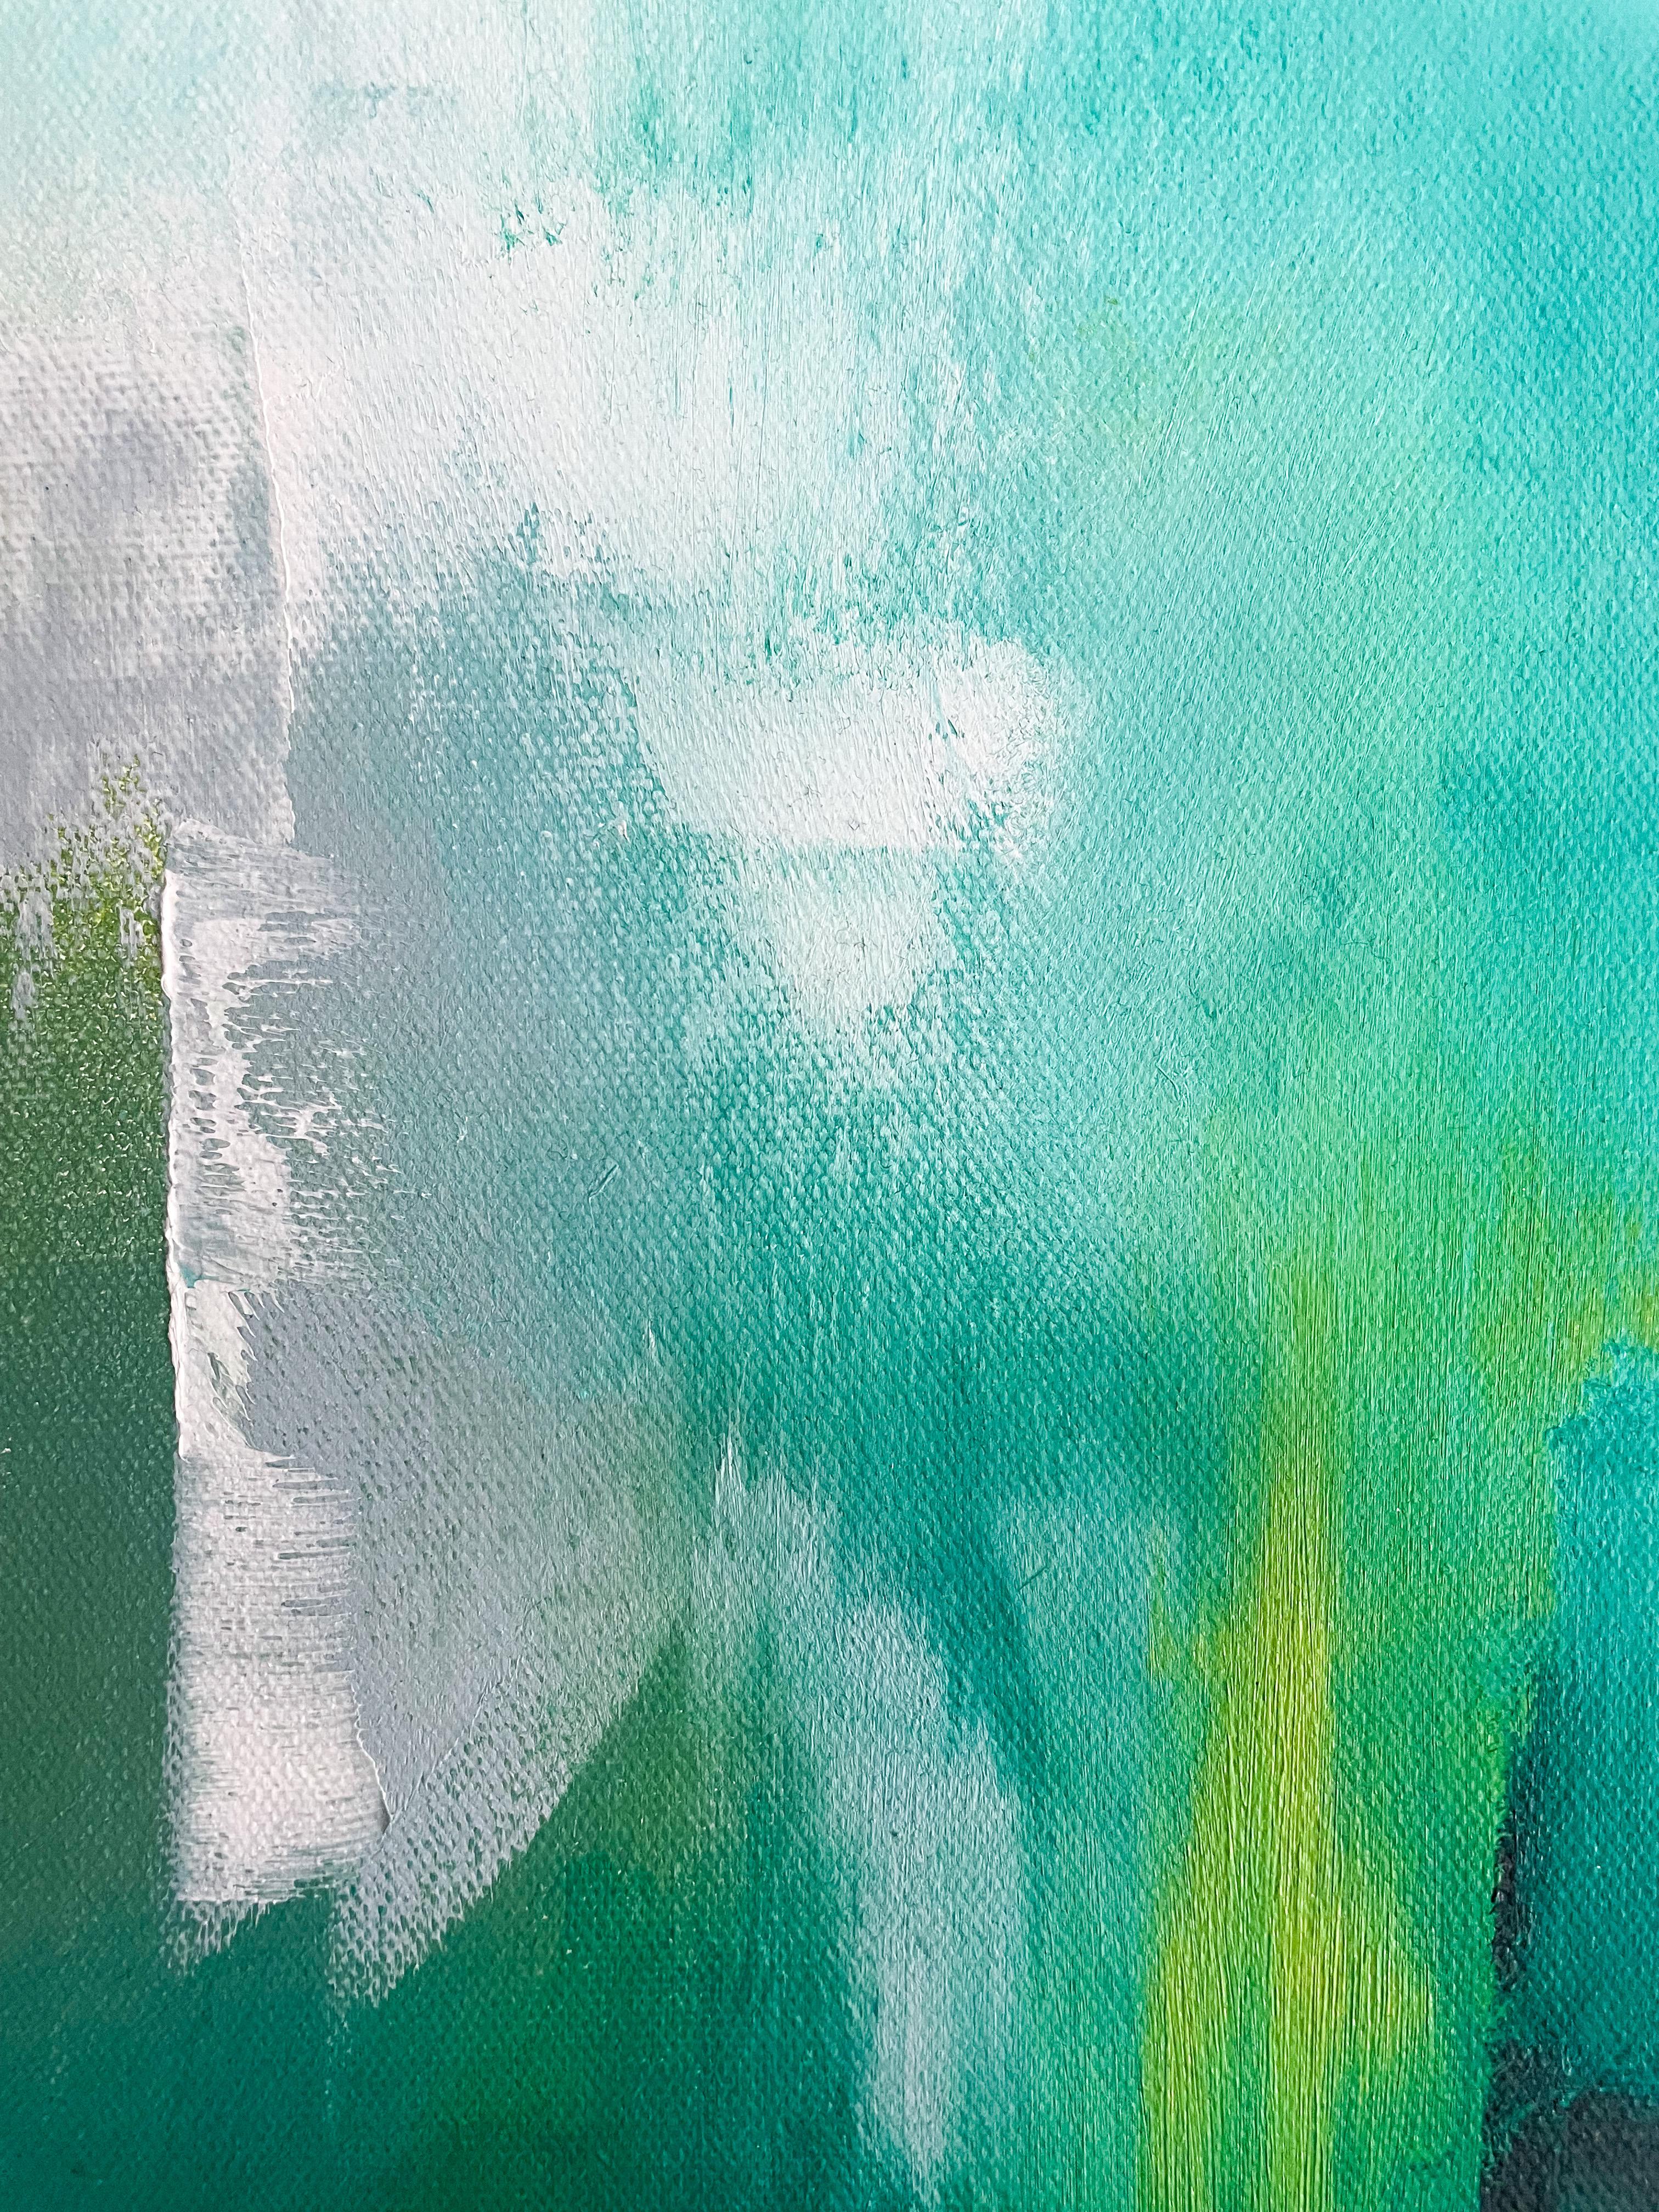 <p>Commentaires de l'artiste<br>Un dégradé de turquoise dessine la toile du paysage abstrait de l'artiste Sarah Parsons. Elle peint la sensation de l'herbe fraîche sur les pieds nus et l'air vivifiant de la fin de l'été. Des accents stimulants de